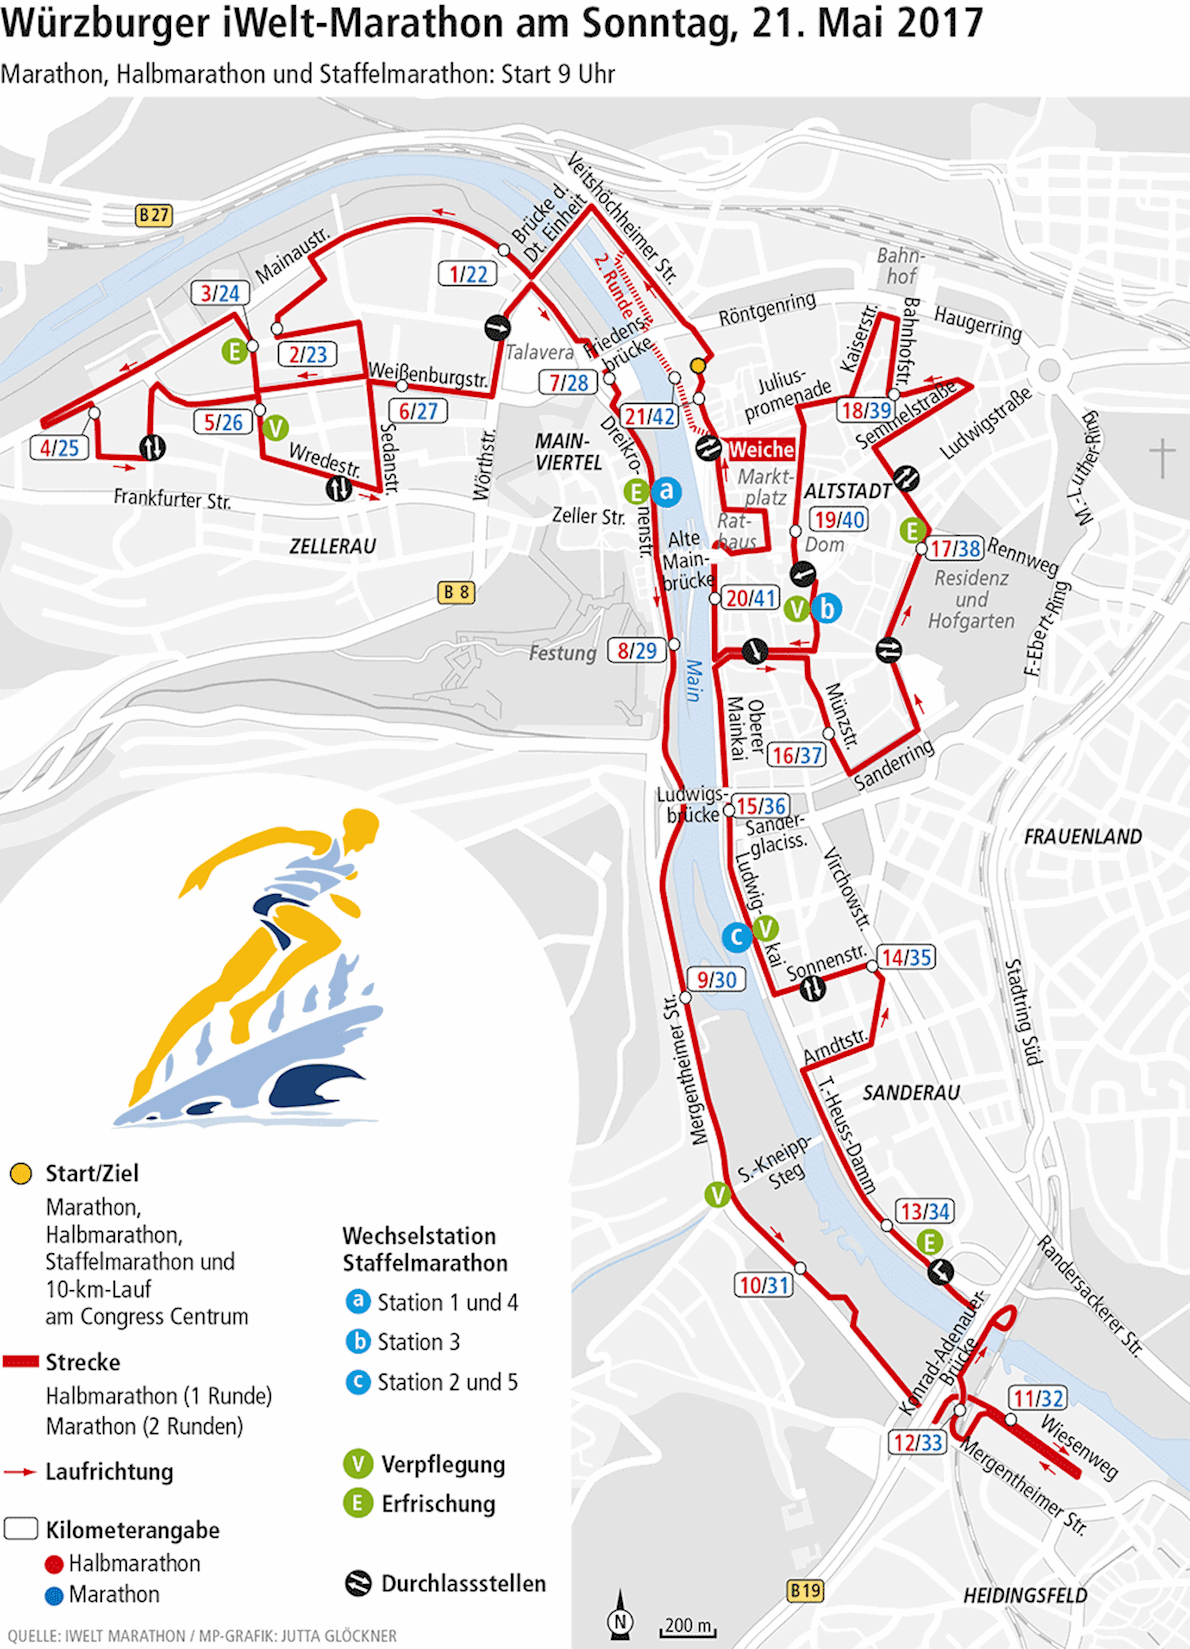 iWelt Marathon Würzburg ITINERAIRE